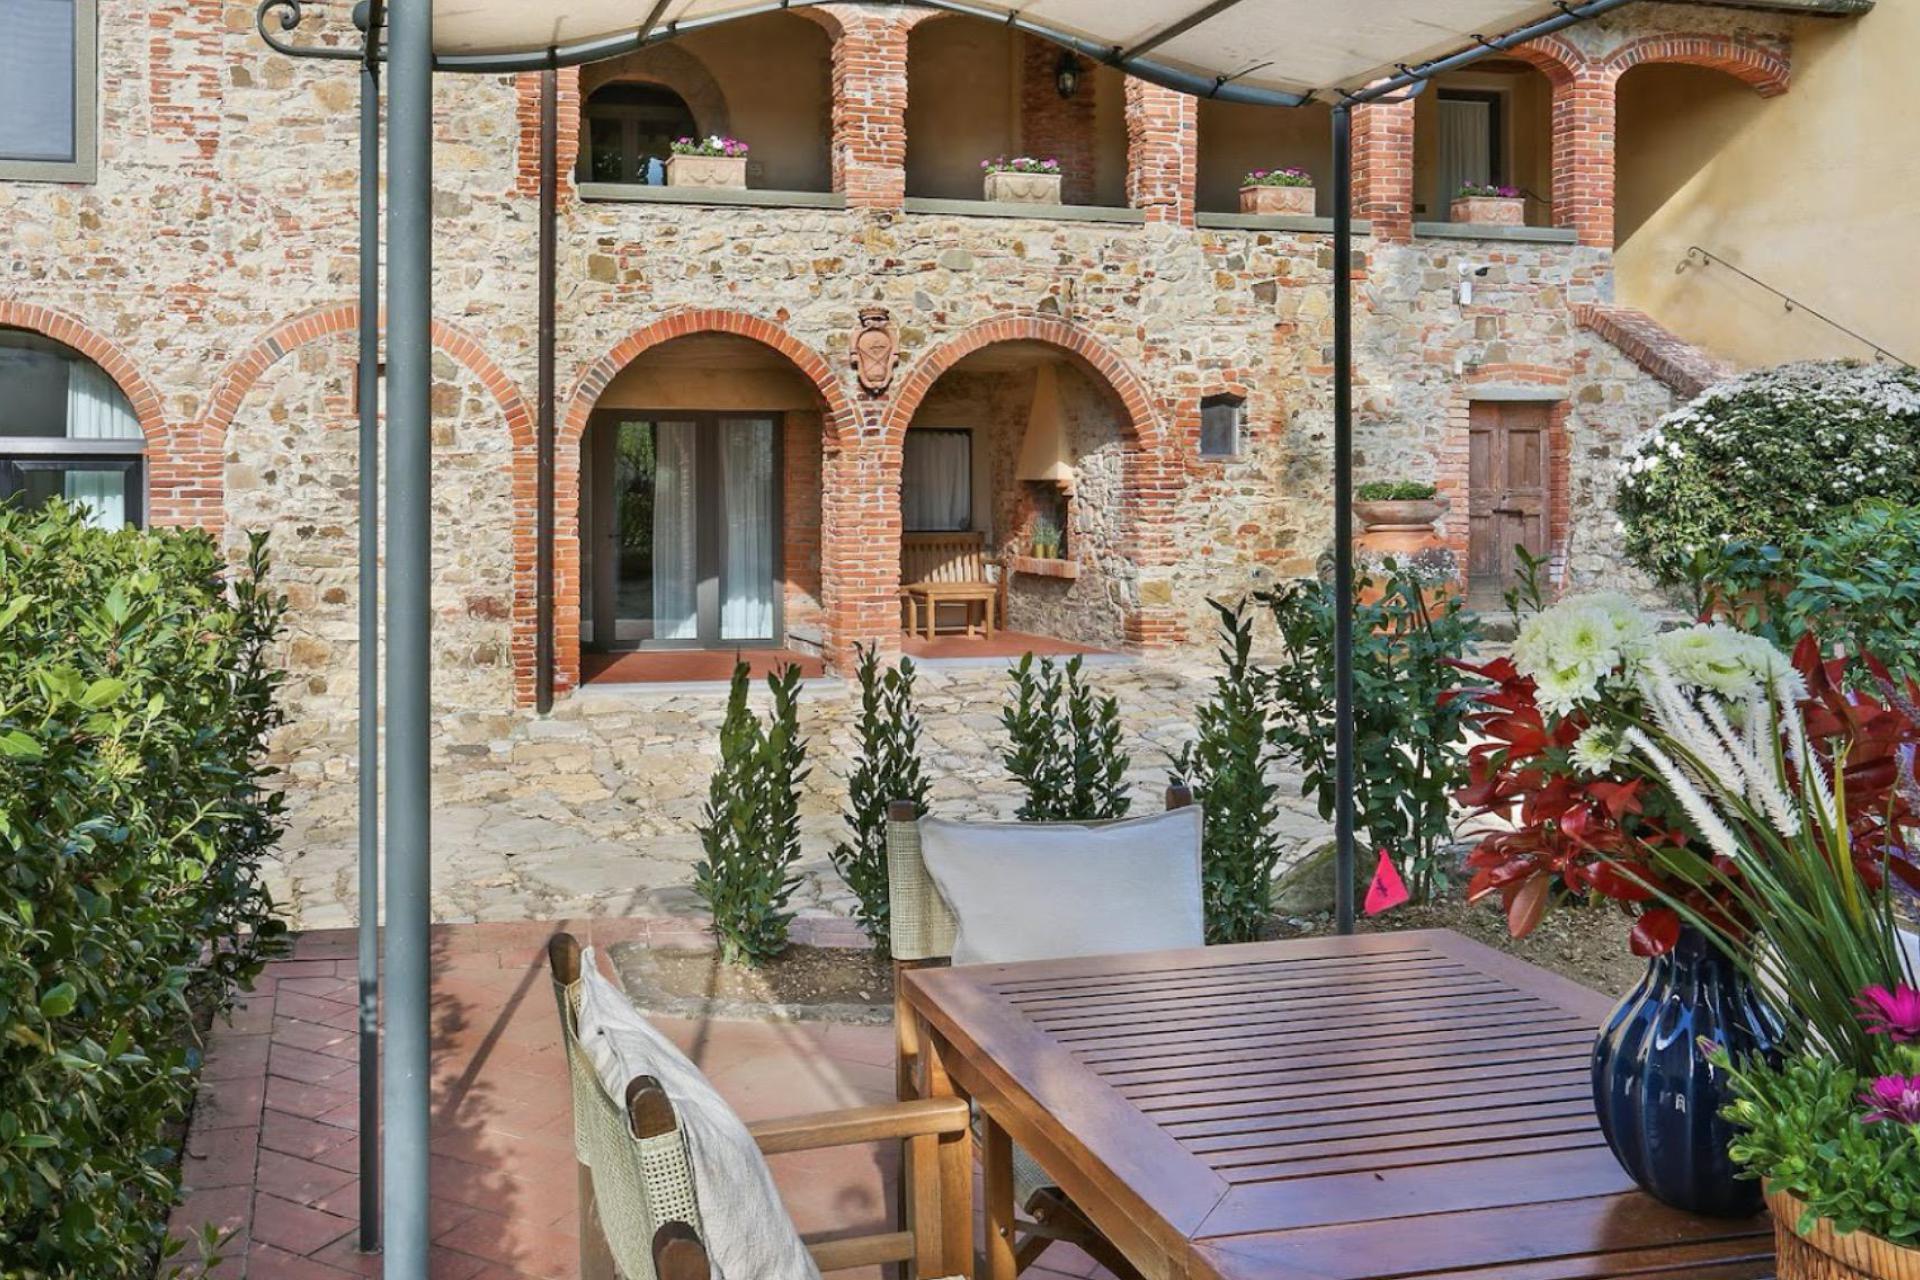 Agriturismo Toscane 11 appartementen in Toscane met restaurant en wijnbar | myitaly.nl